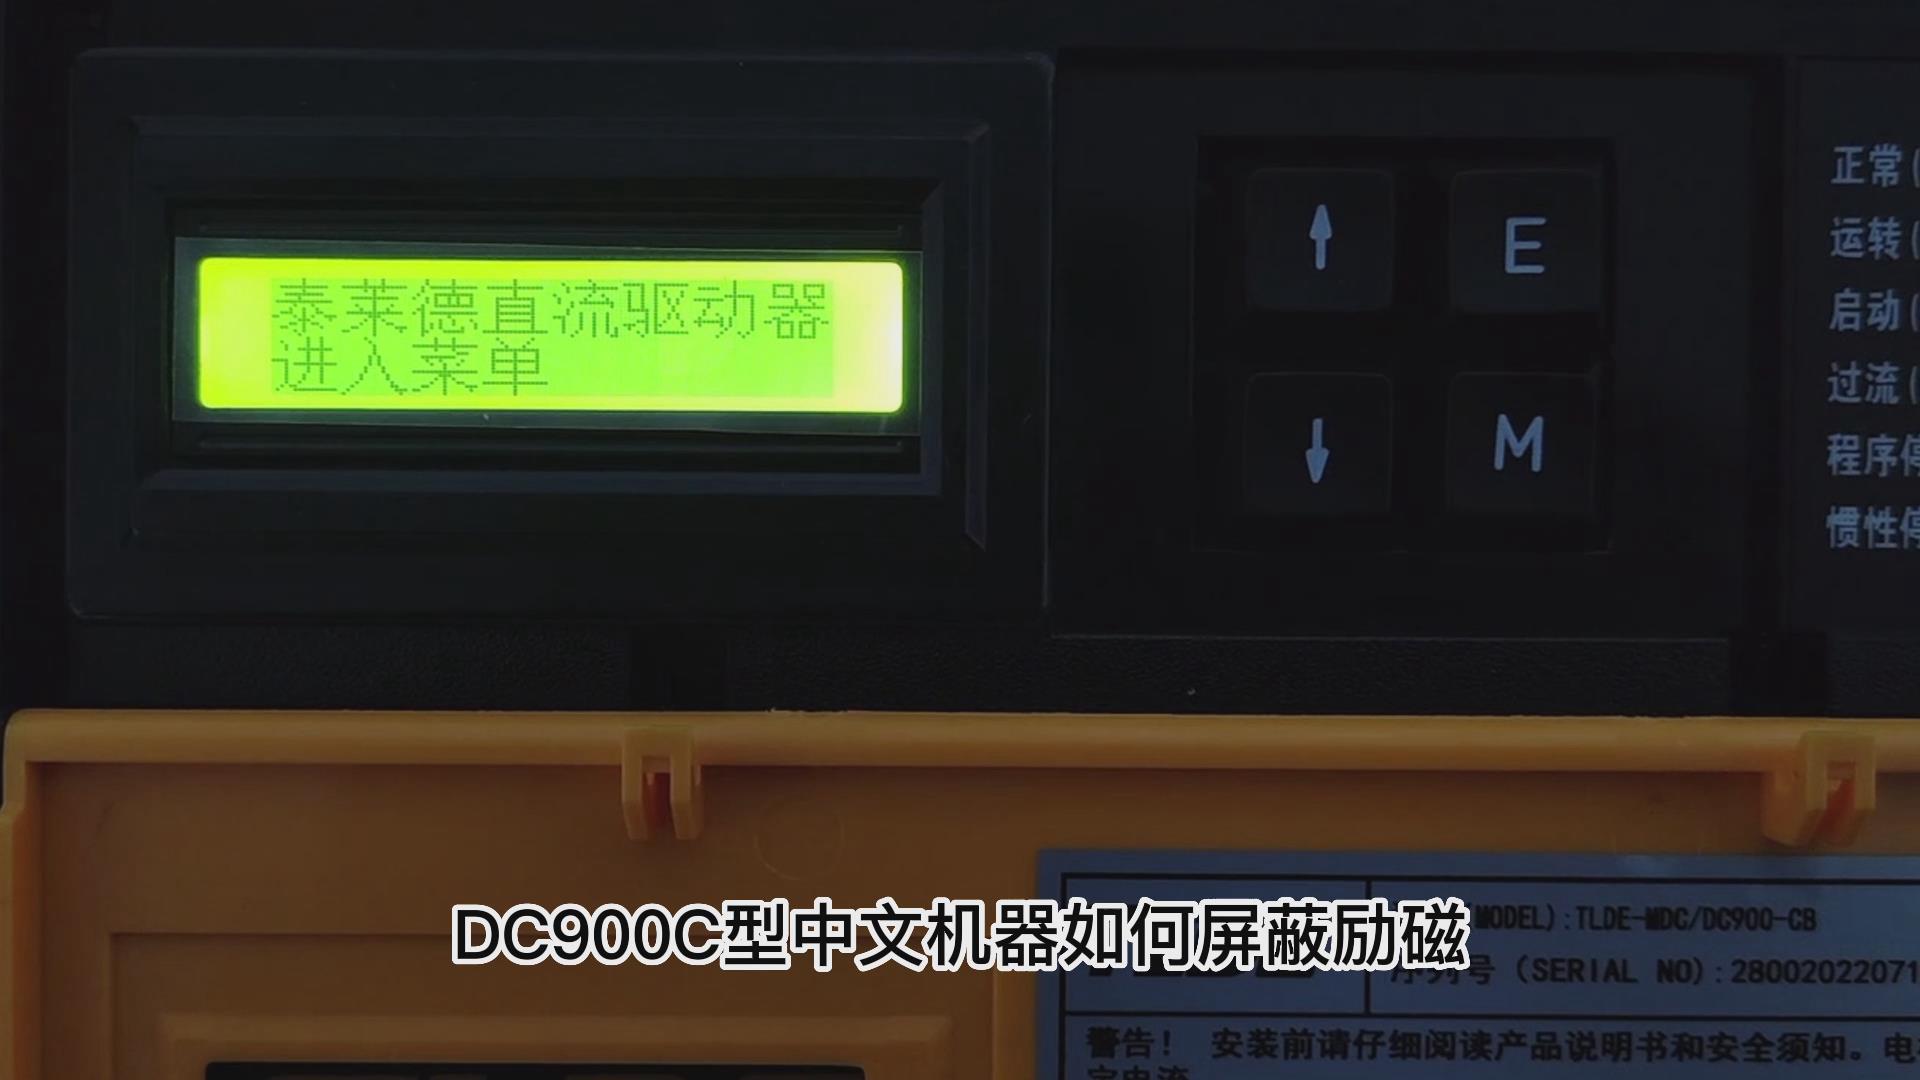 DC900C系列直流驱动器如何屏蔽励磁? 仁控机电！